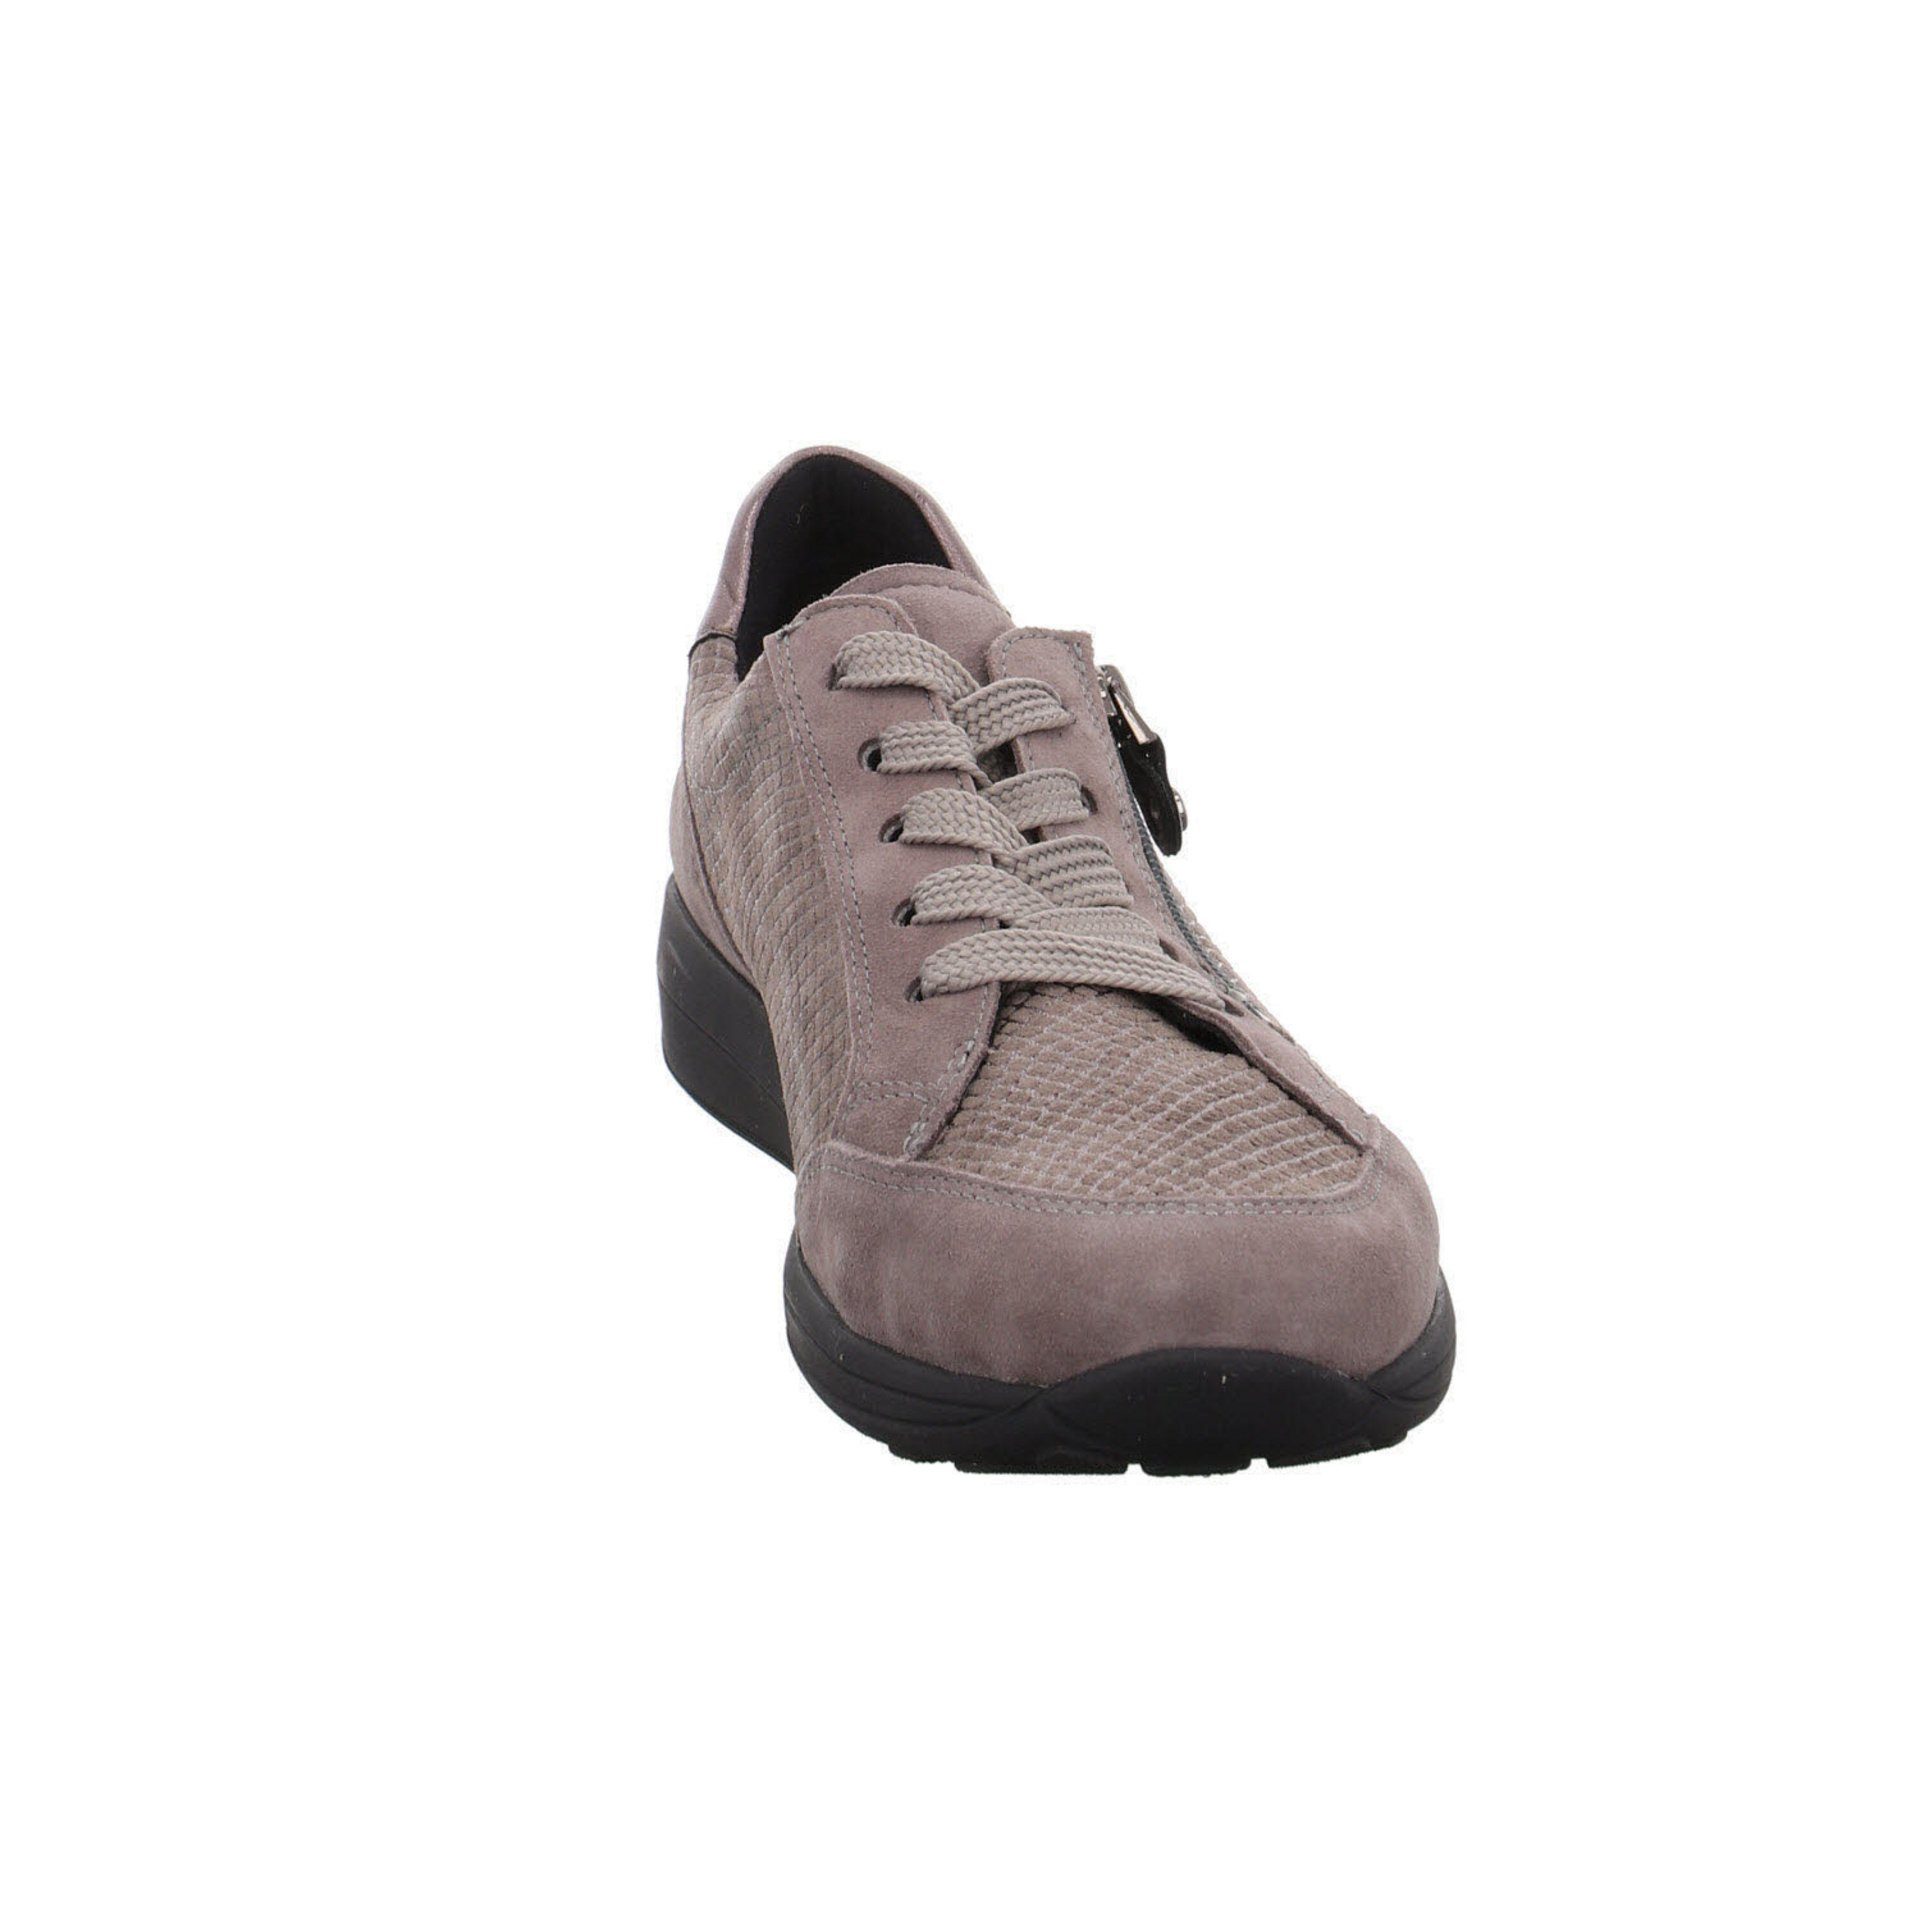 Schnürschuh Ara Damen Merano Sneaker Sneaker Lederkombination Schuhe 040337 grau